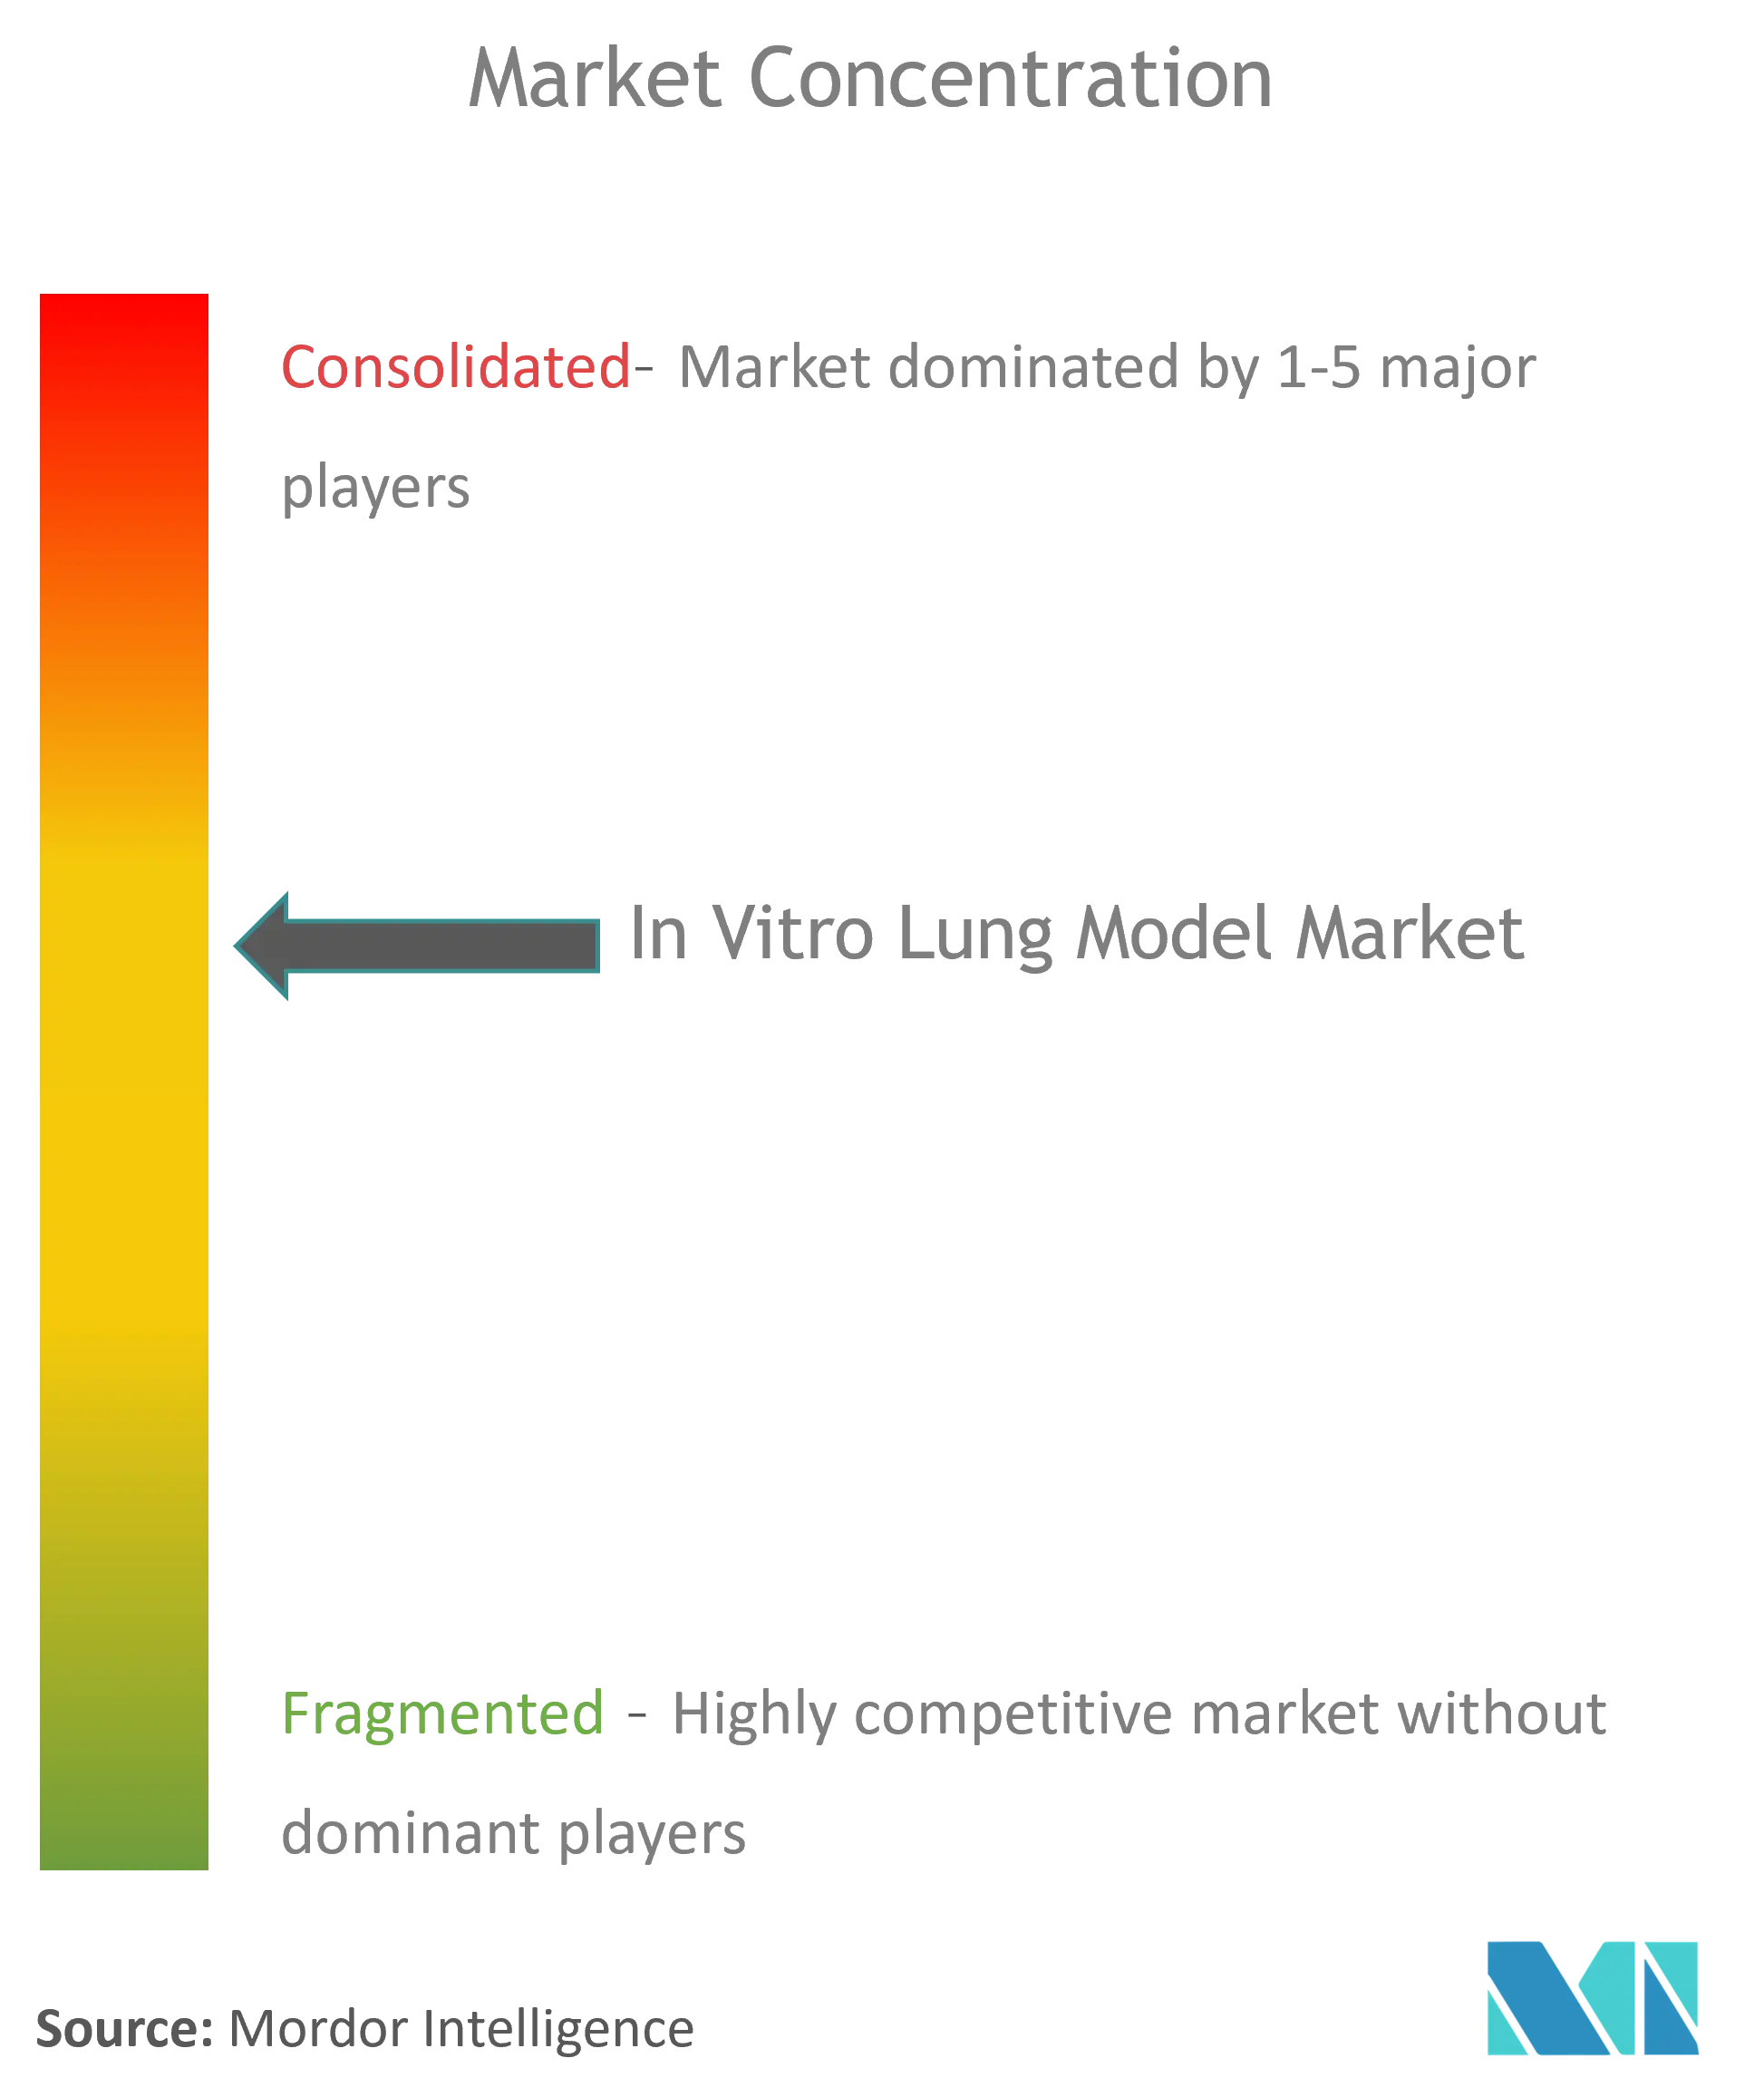 Modelo pulmonar global in vitroConcentración del Mercado